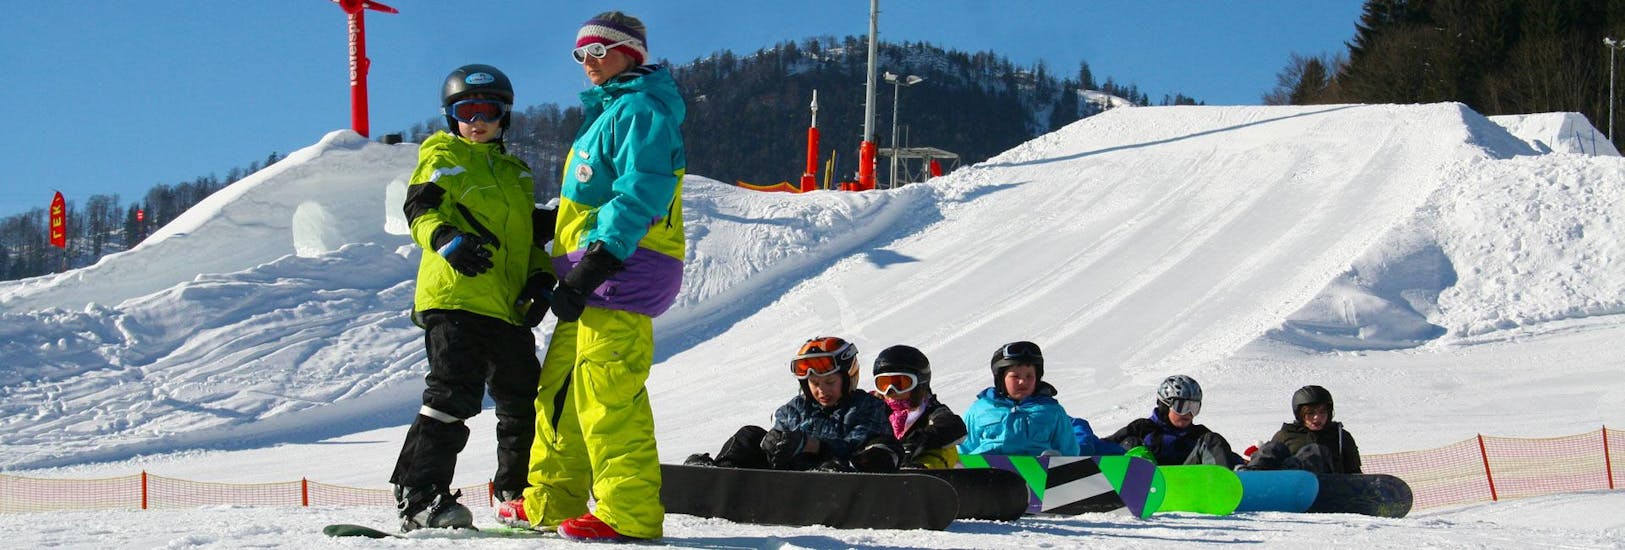 Snowboardkurs (ab 8 J.) für Anfänger mit Ski- und Snowboardschule Ruhpolding.